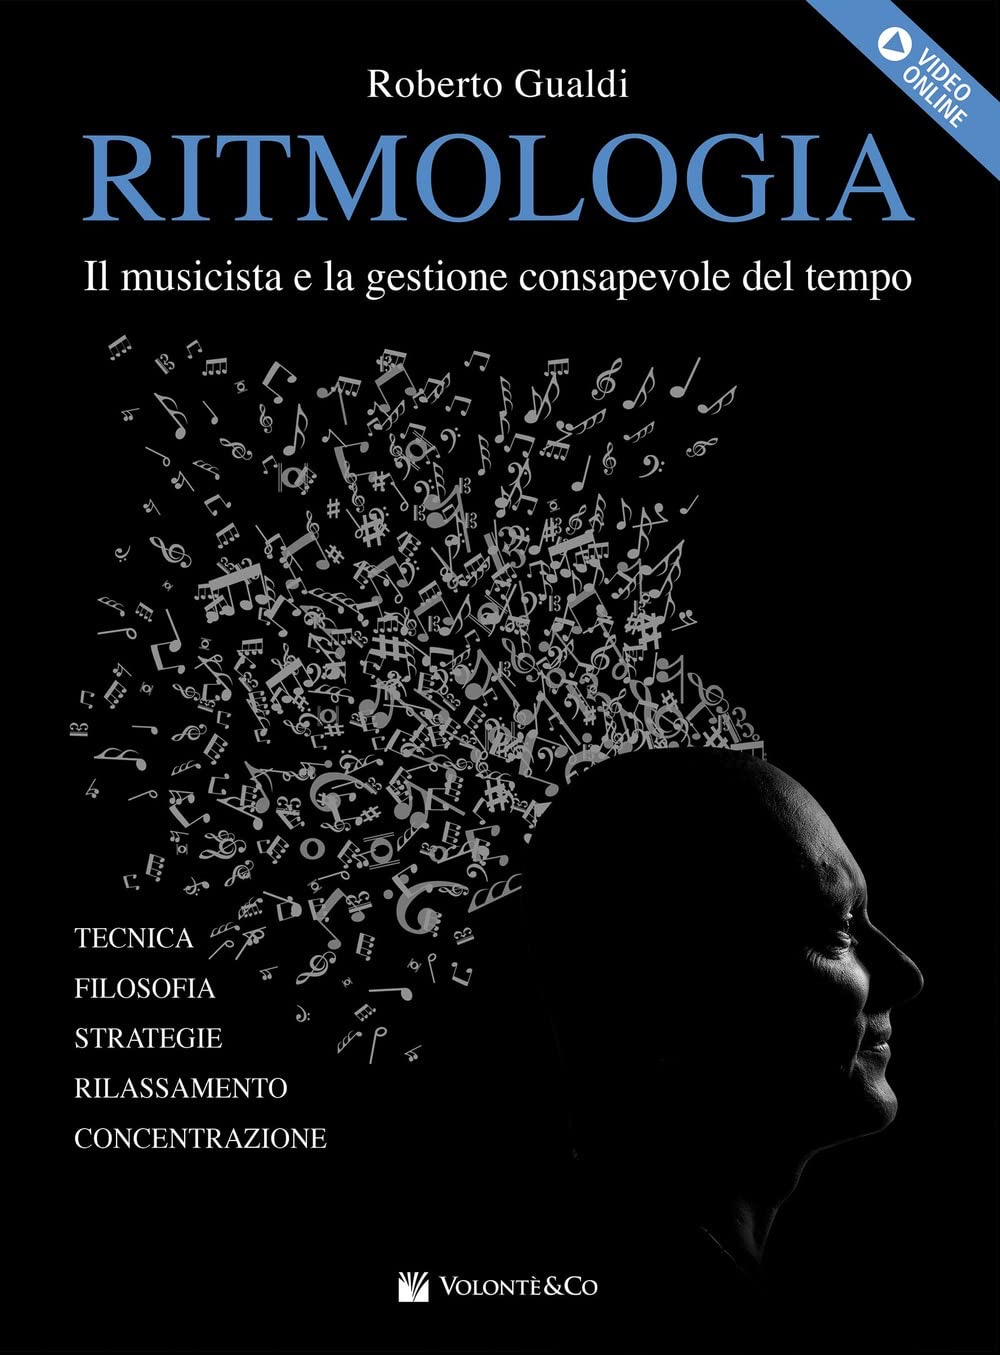 Roberto Gualdi: "Ritmologia"